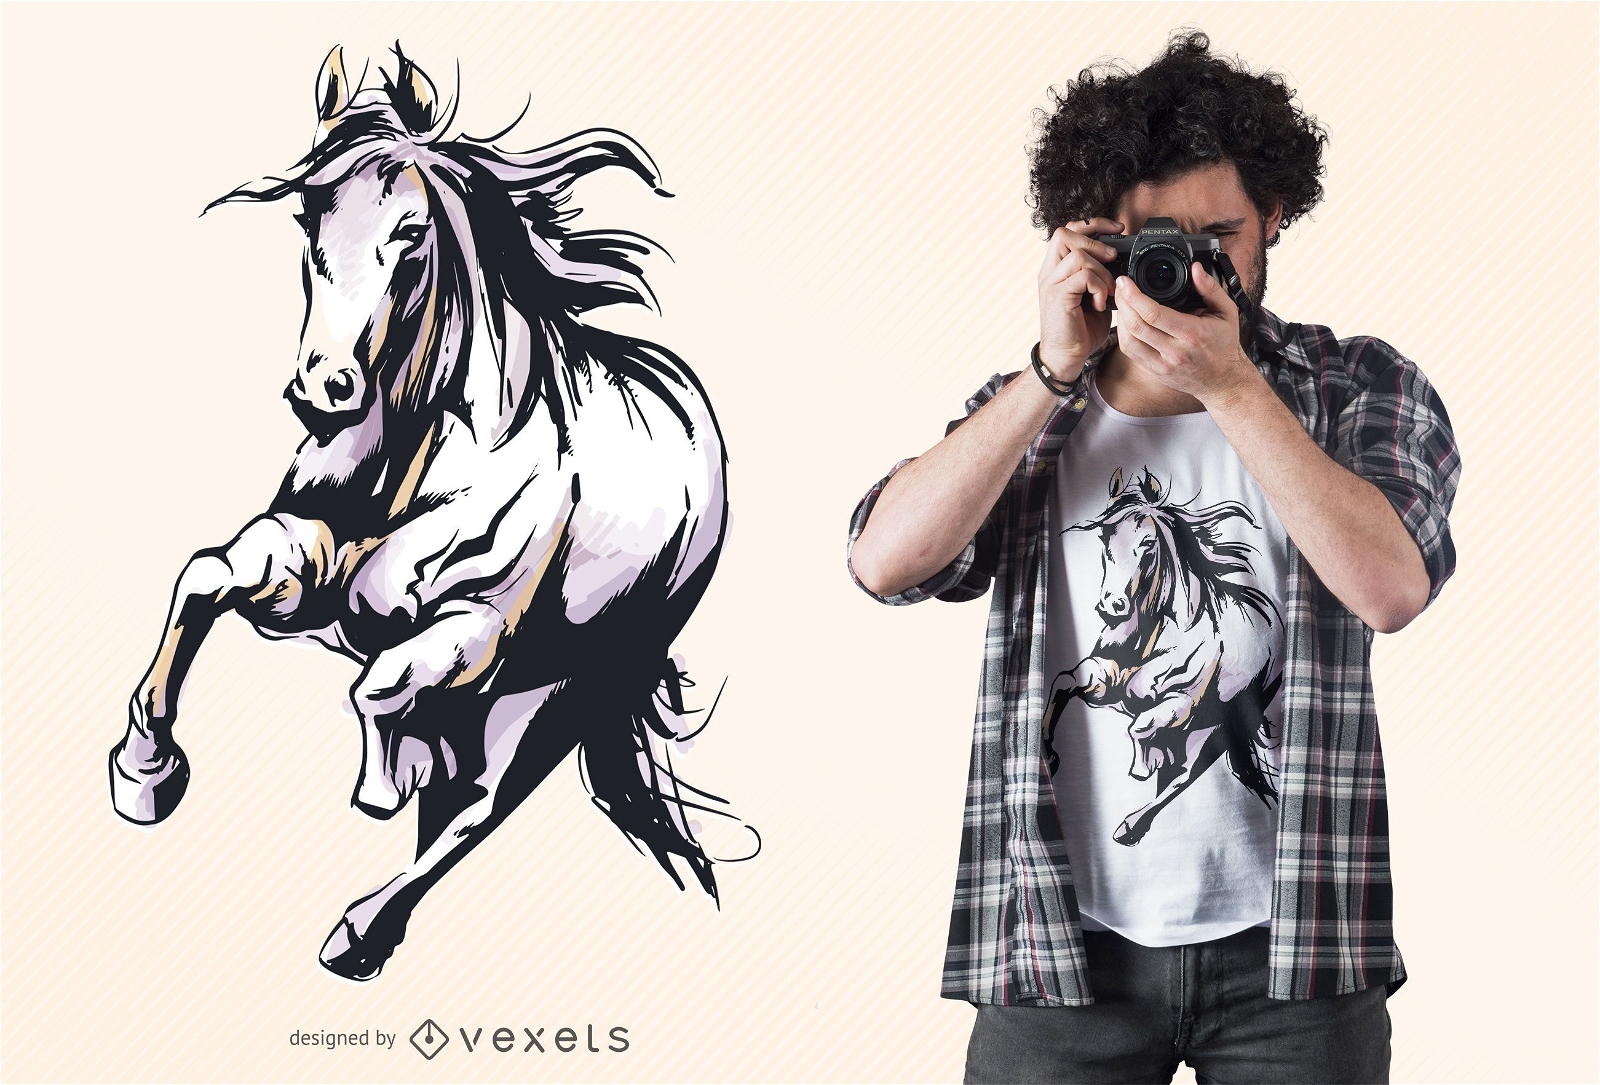 sówatercolor: DESENHO - Desenho do cavalo